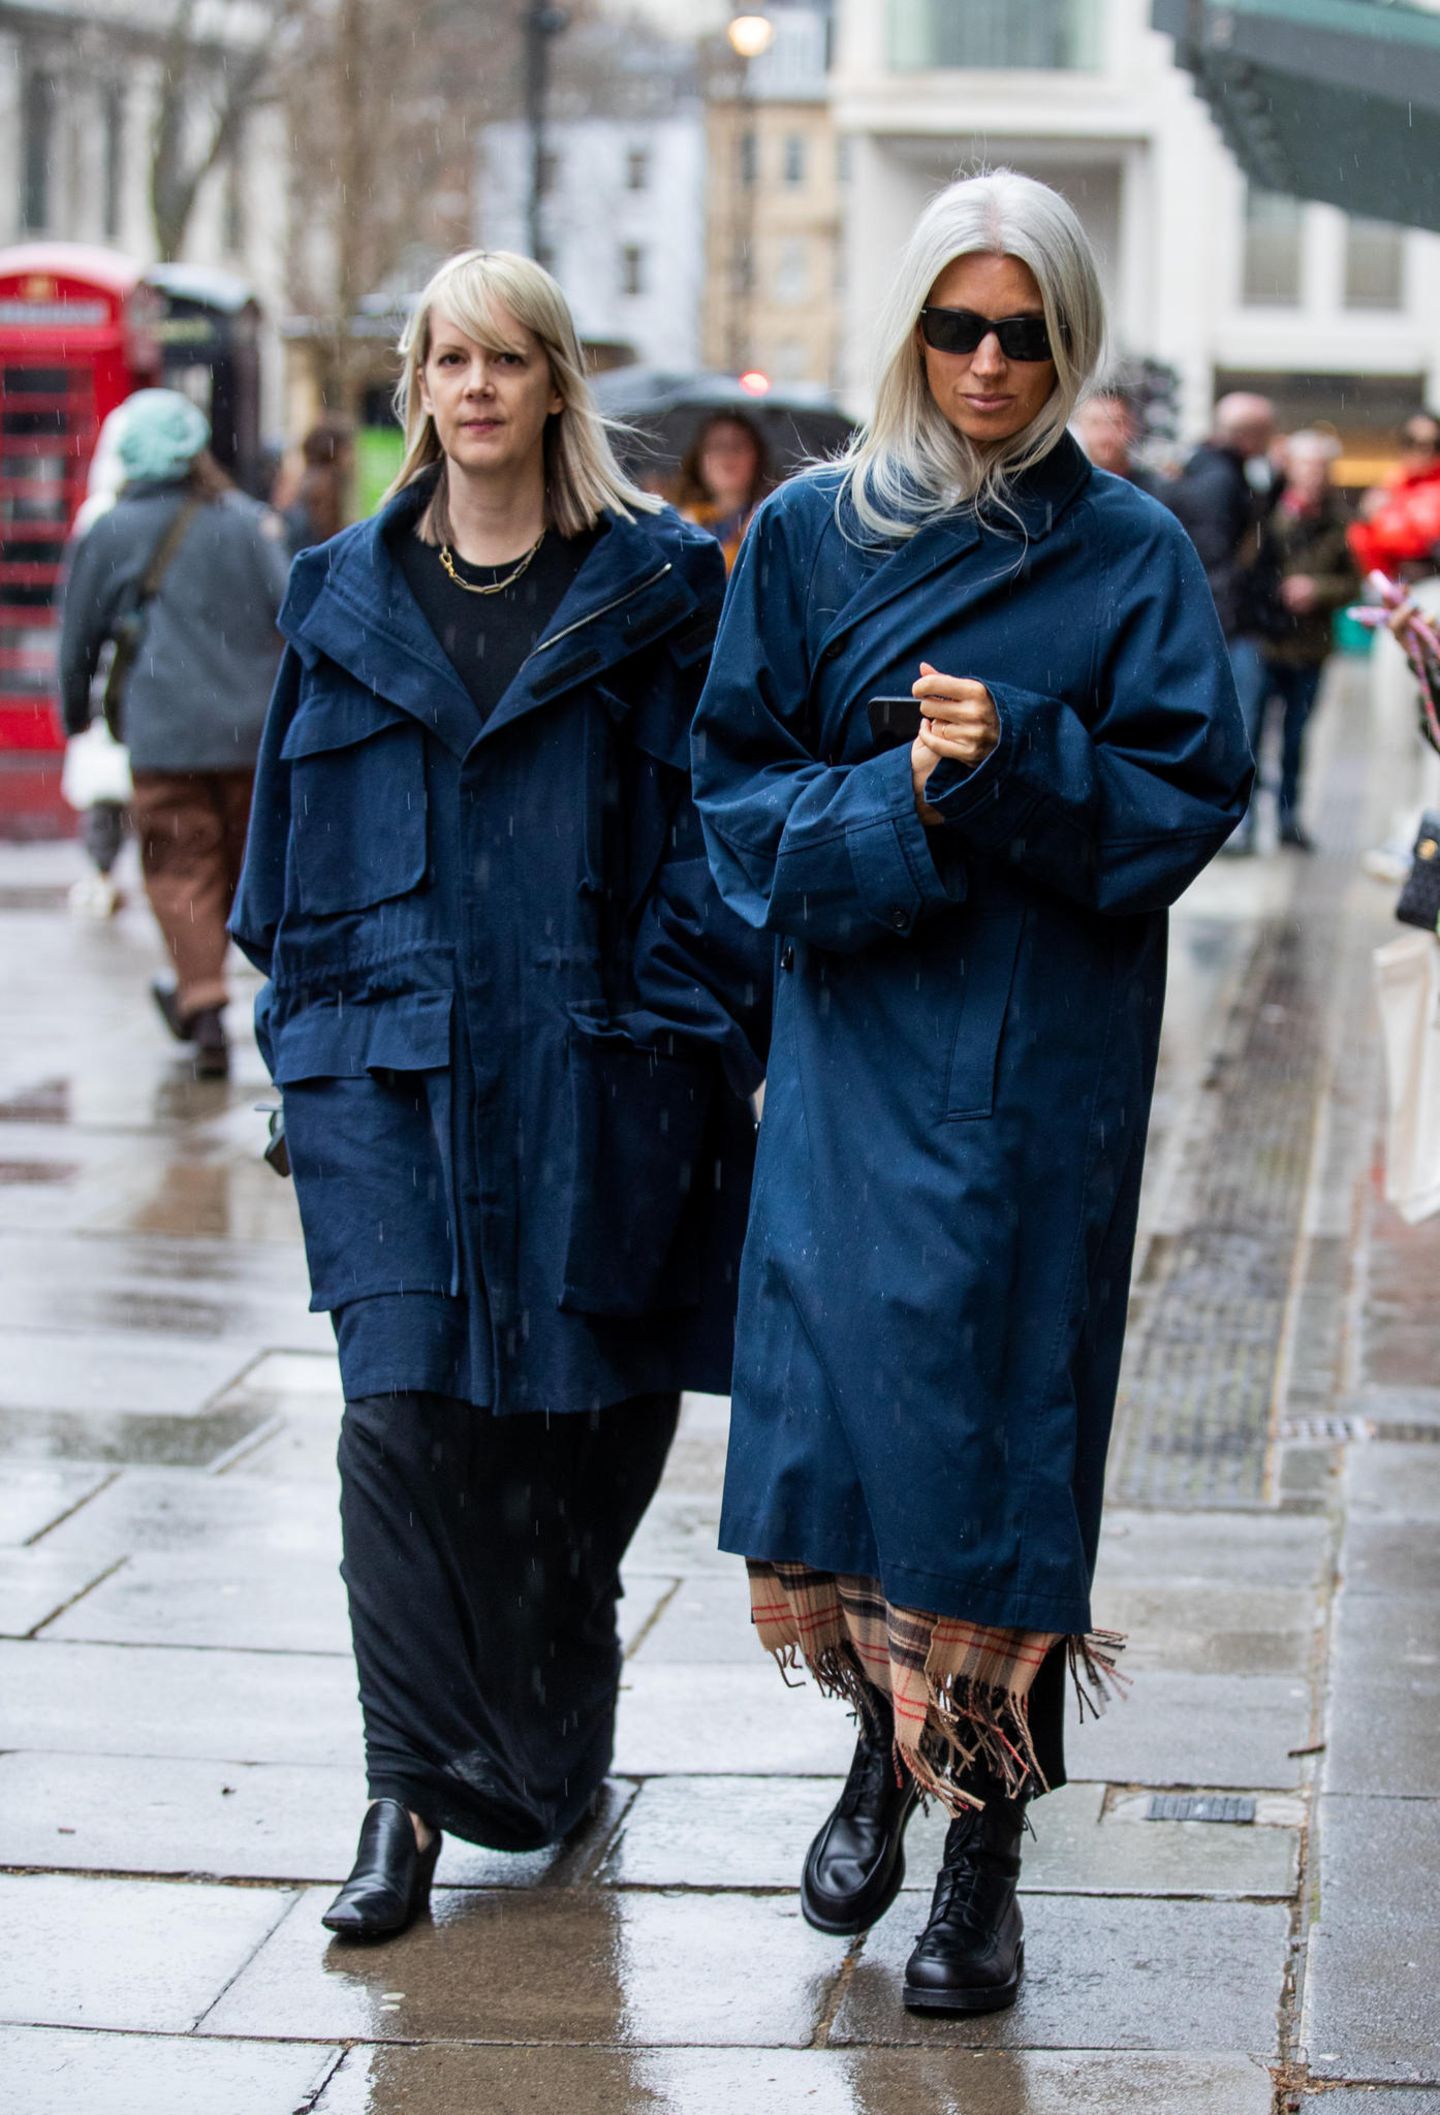 Beim Londoner Februarwetter kann man schon mal den Blues bekommen, die Vogue-Redakteurinnen Laura Ingham und Sarah Harris setzen den aber passend zur Fashion Week sehr stylisch um.